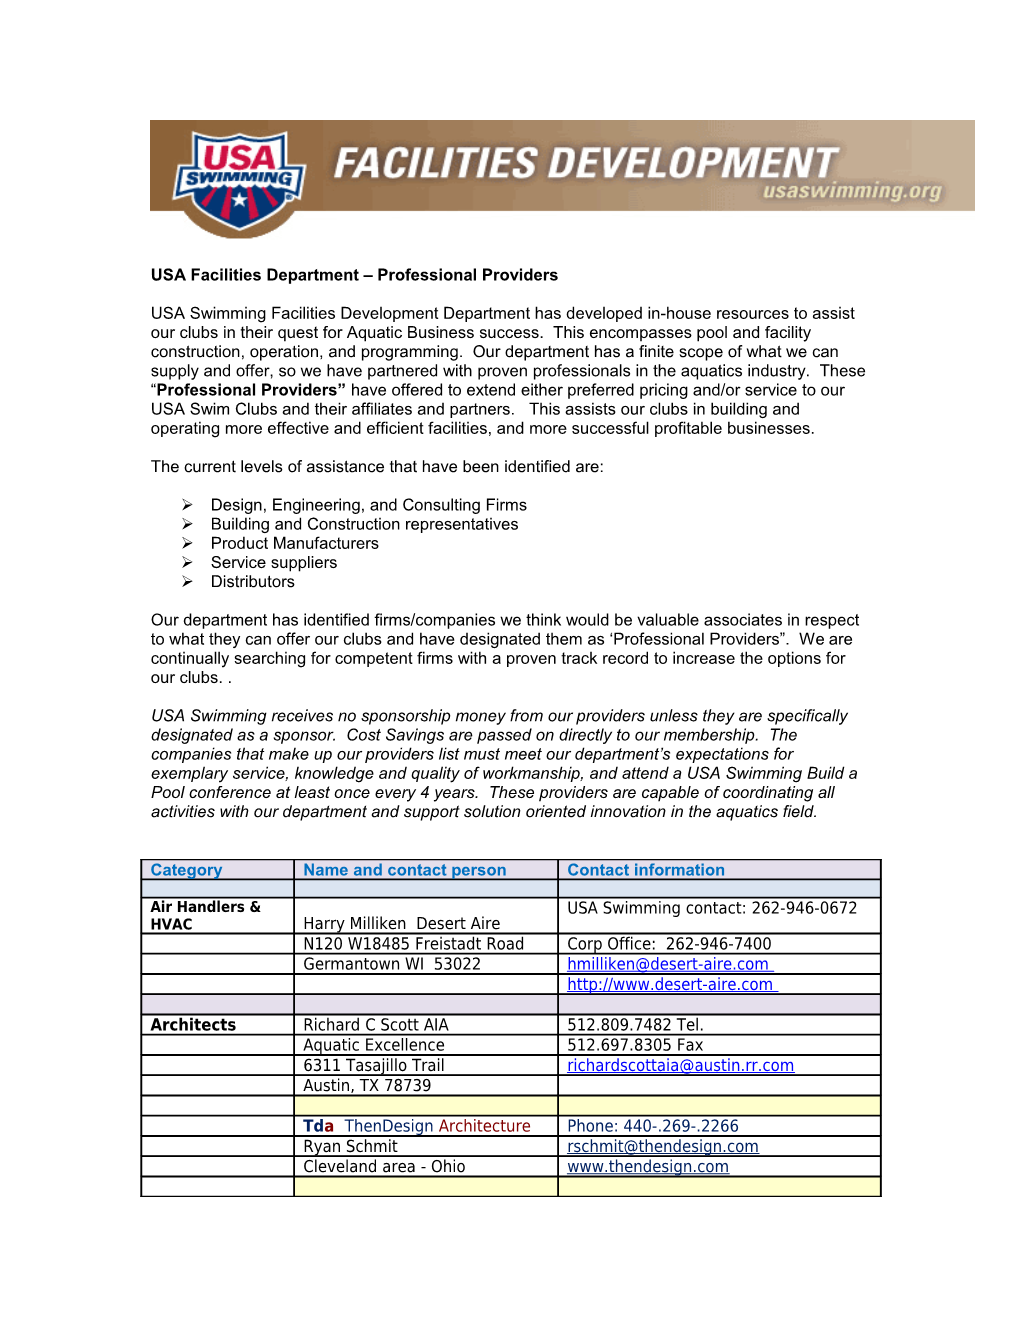 USA Facilities Department Preferred Providers